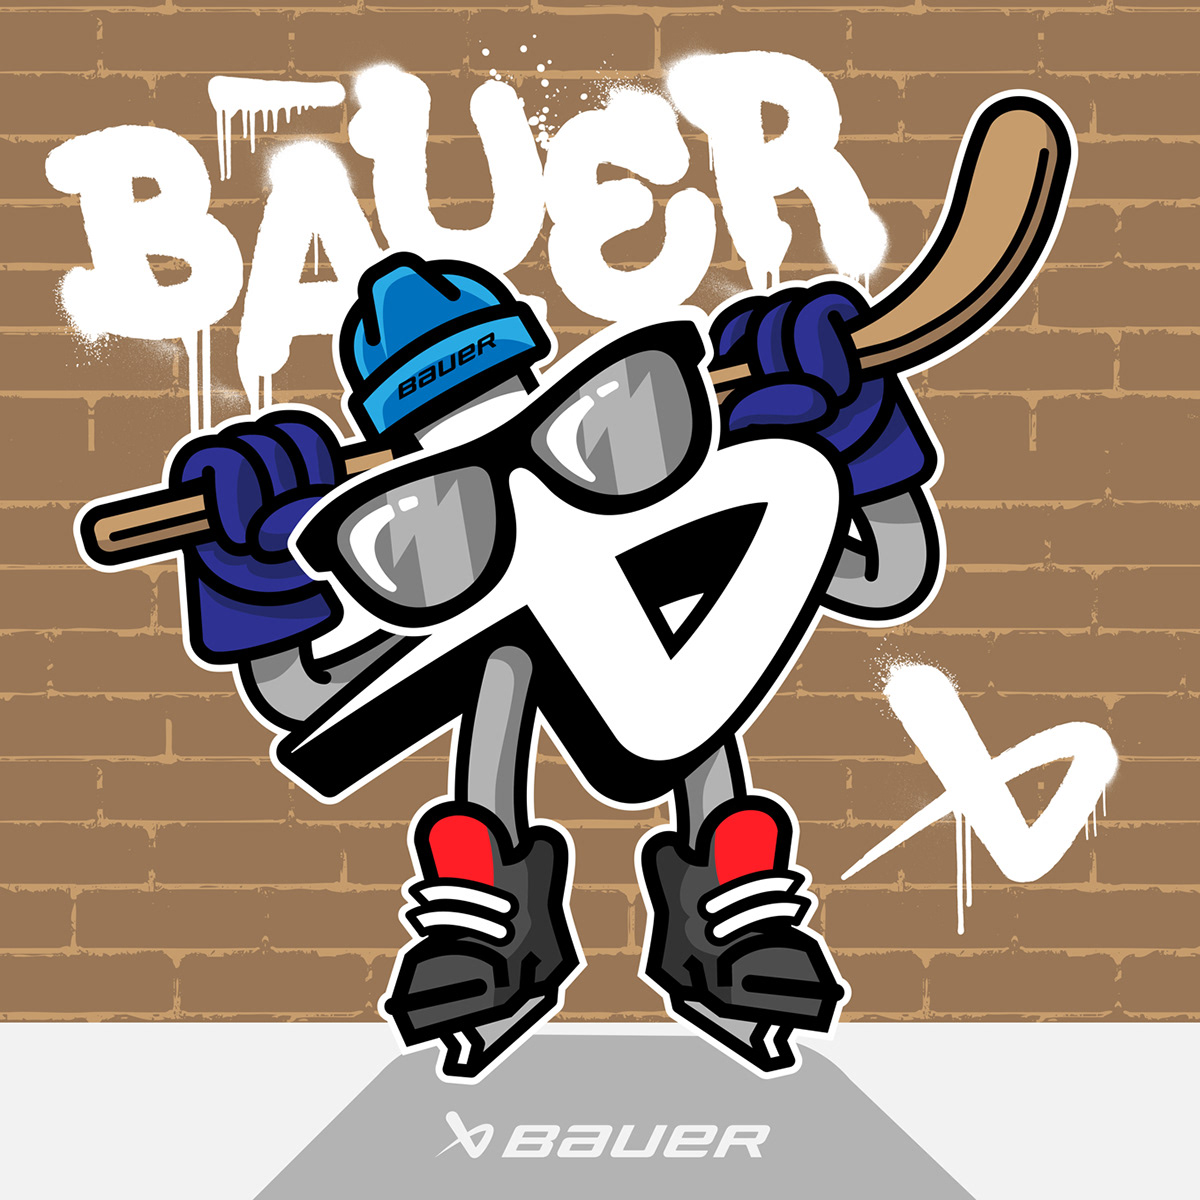 art bauer bauerhockey blogo design graphic design  hockey Mascot puck willbgreat